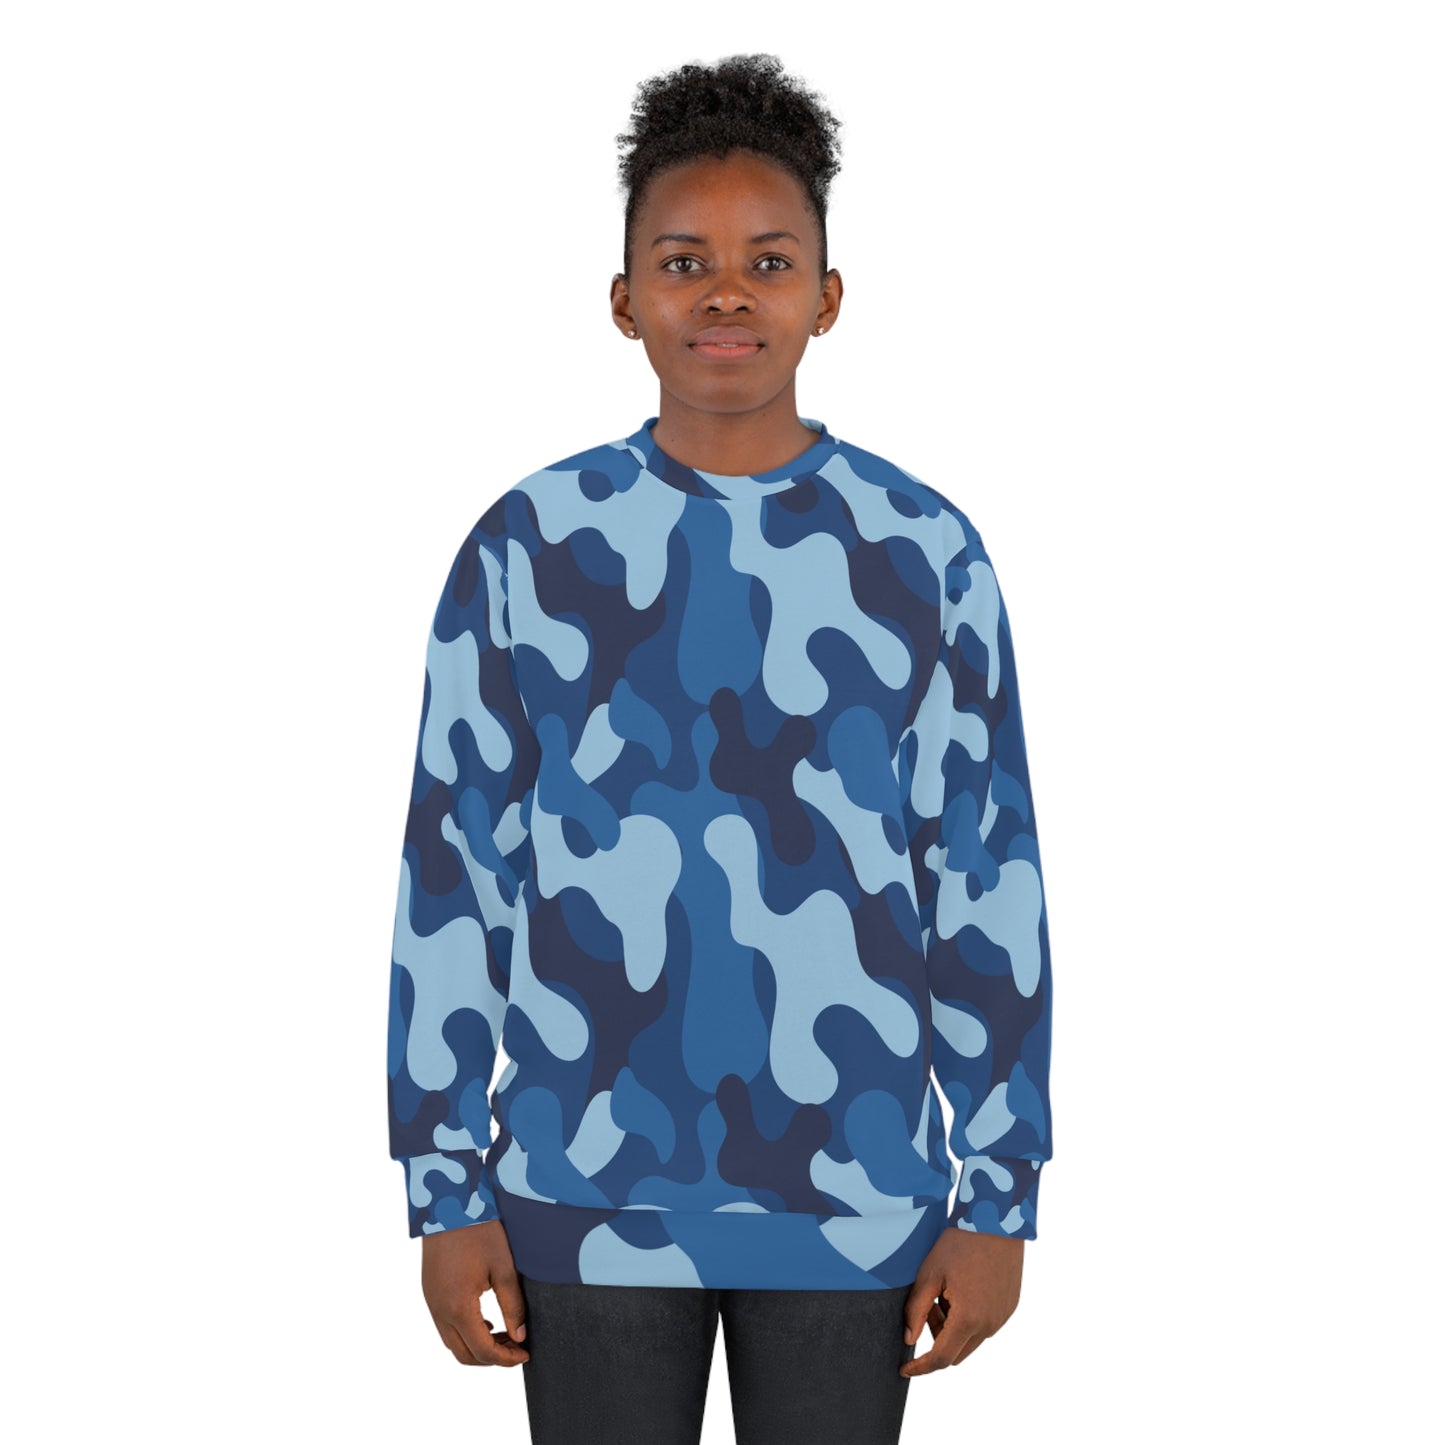 Camouflage Style, Camouflage Army, Camouflage Art,  Unisex Sweatshirt